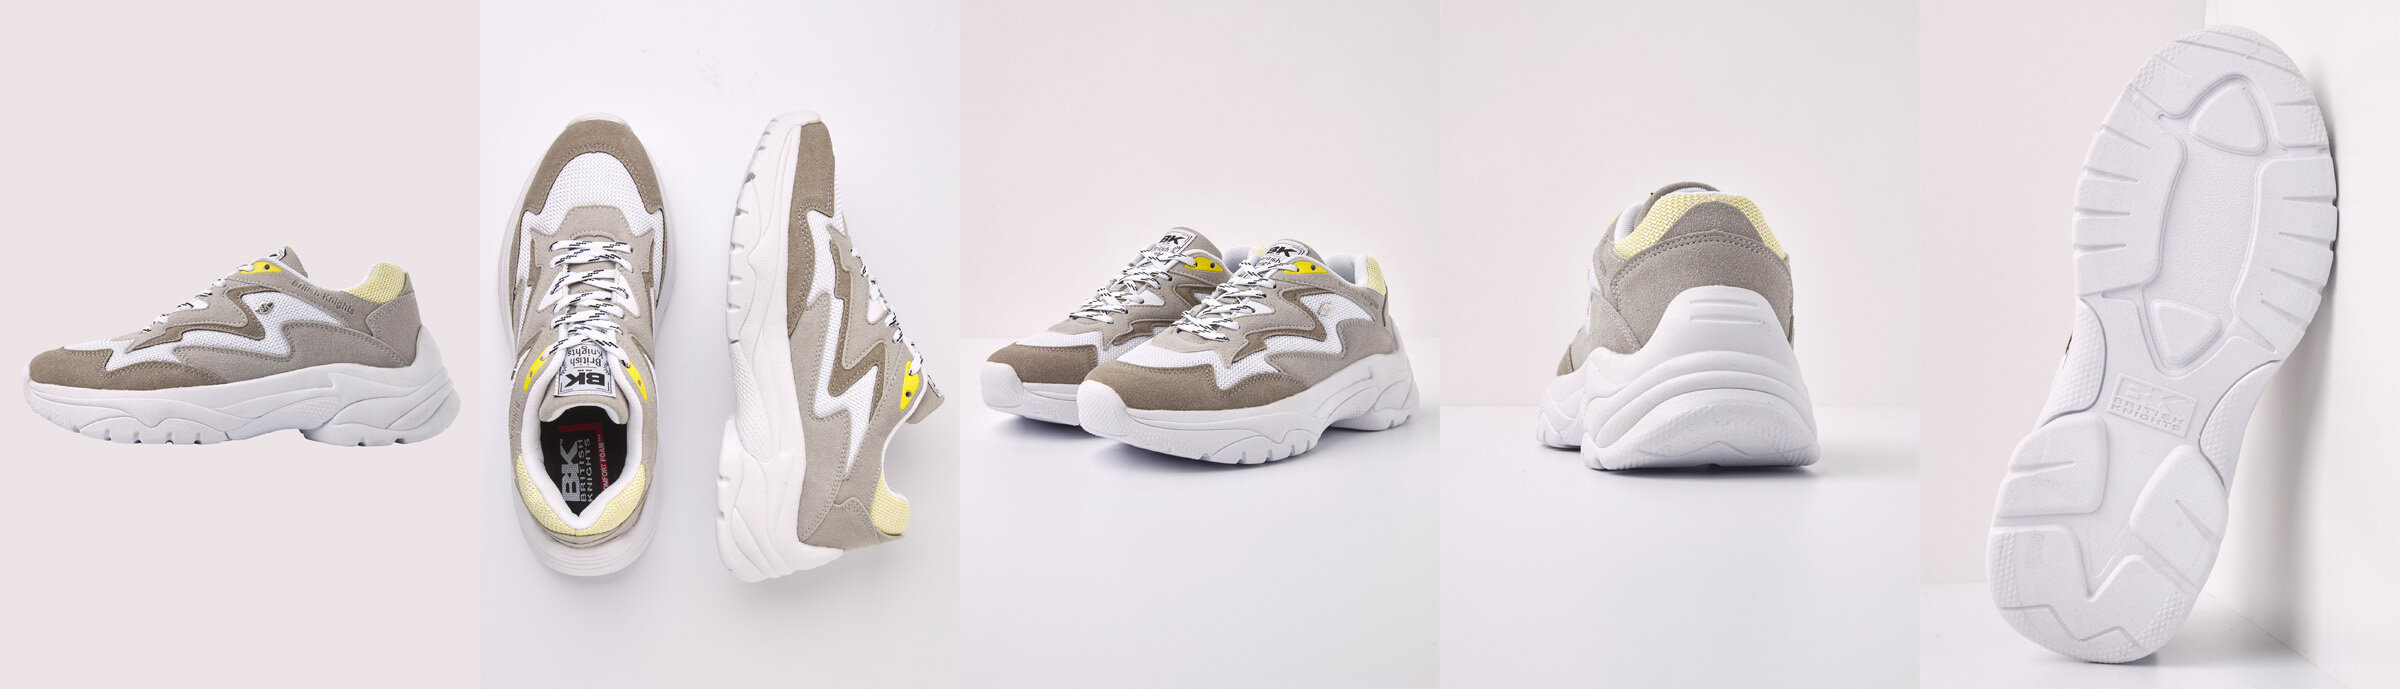 Schoenen fotografie volgens Zalando eisen - Studio Webshot | We Brands